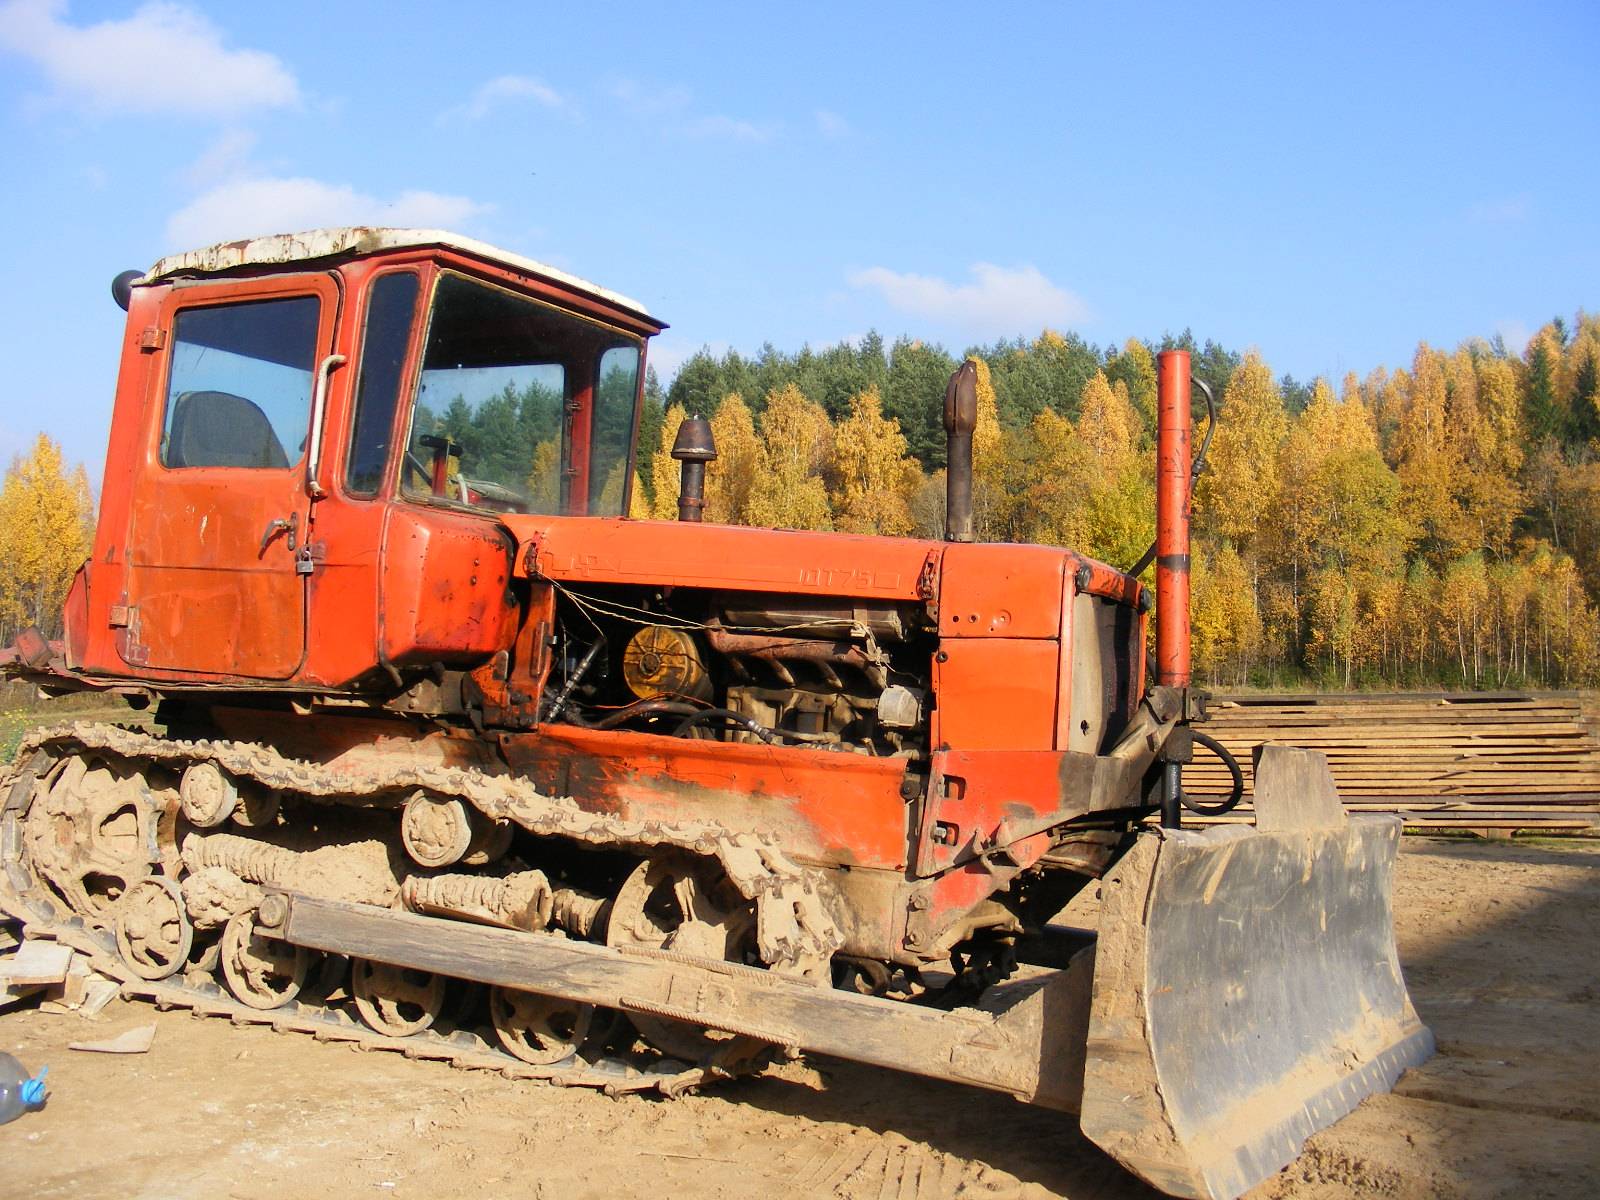 ✅ трактор дт-75 казахстан: технические характеристики, казахстанец, сколько весит, бульдозер - tym-tractor.ru